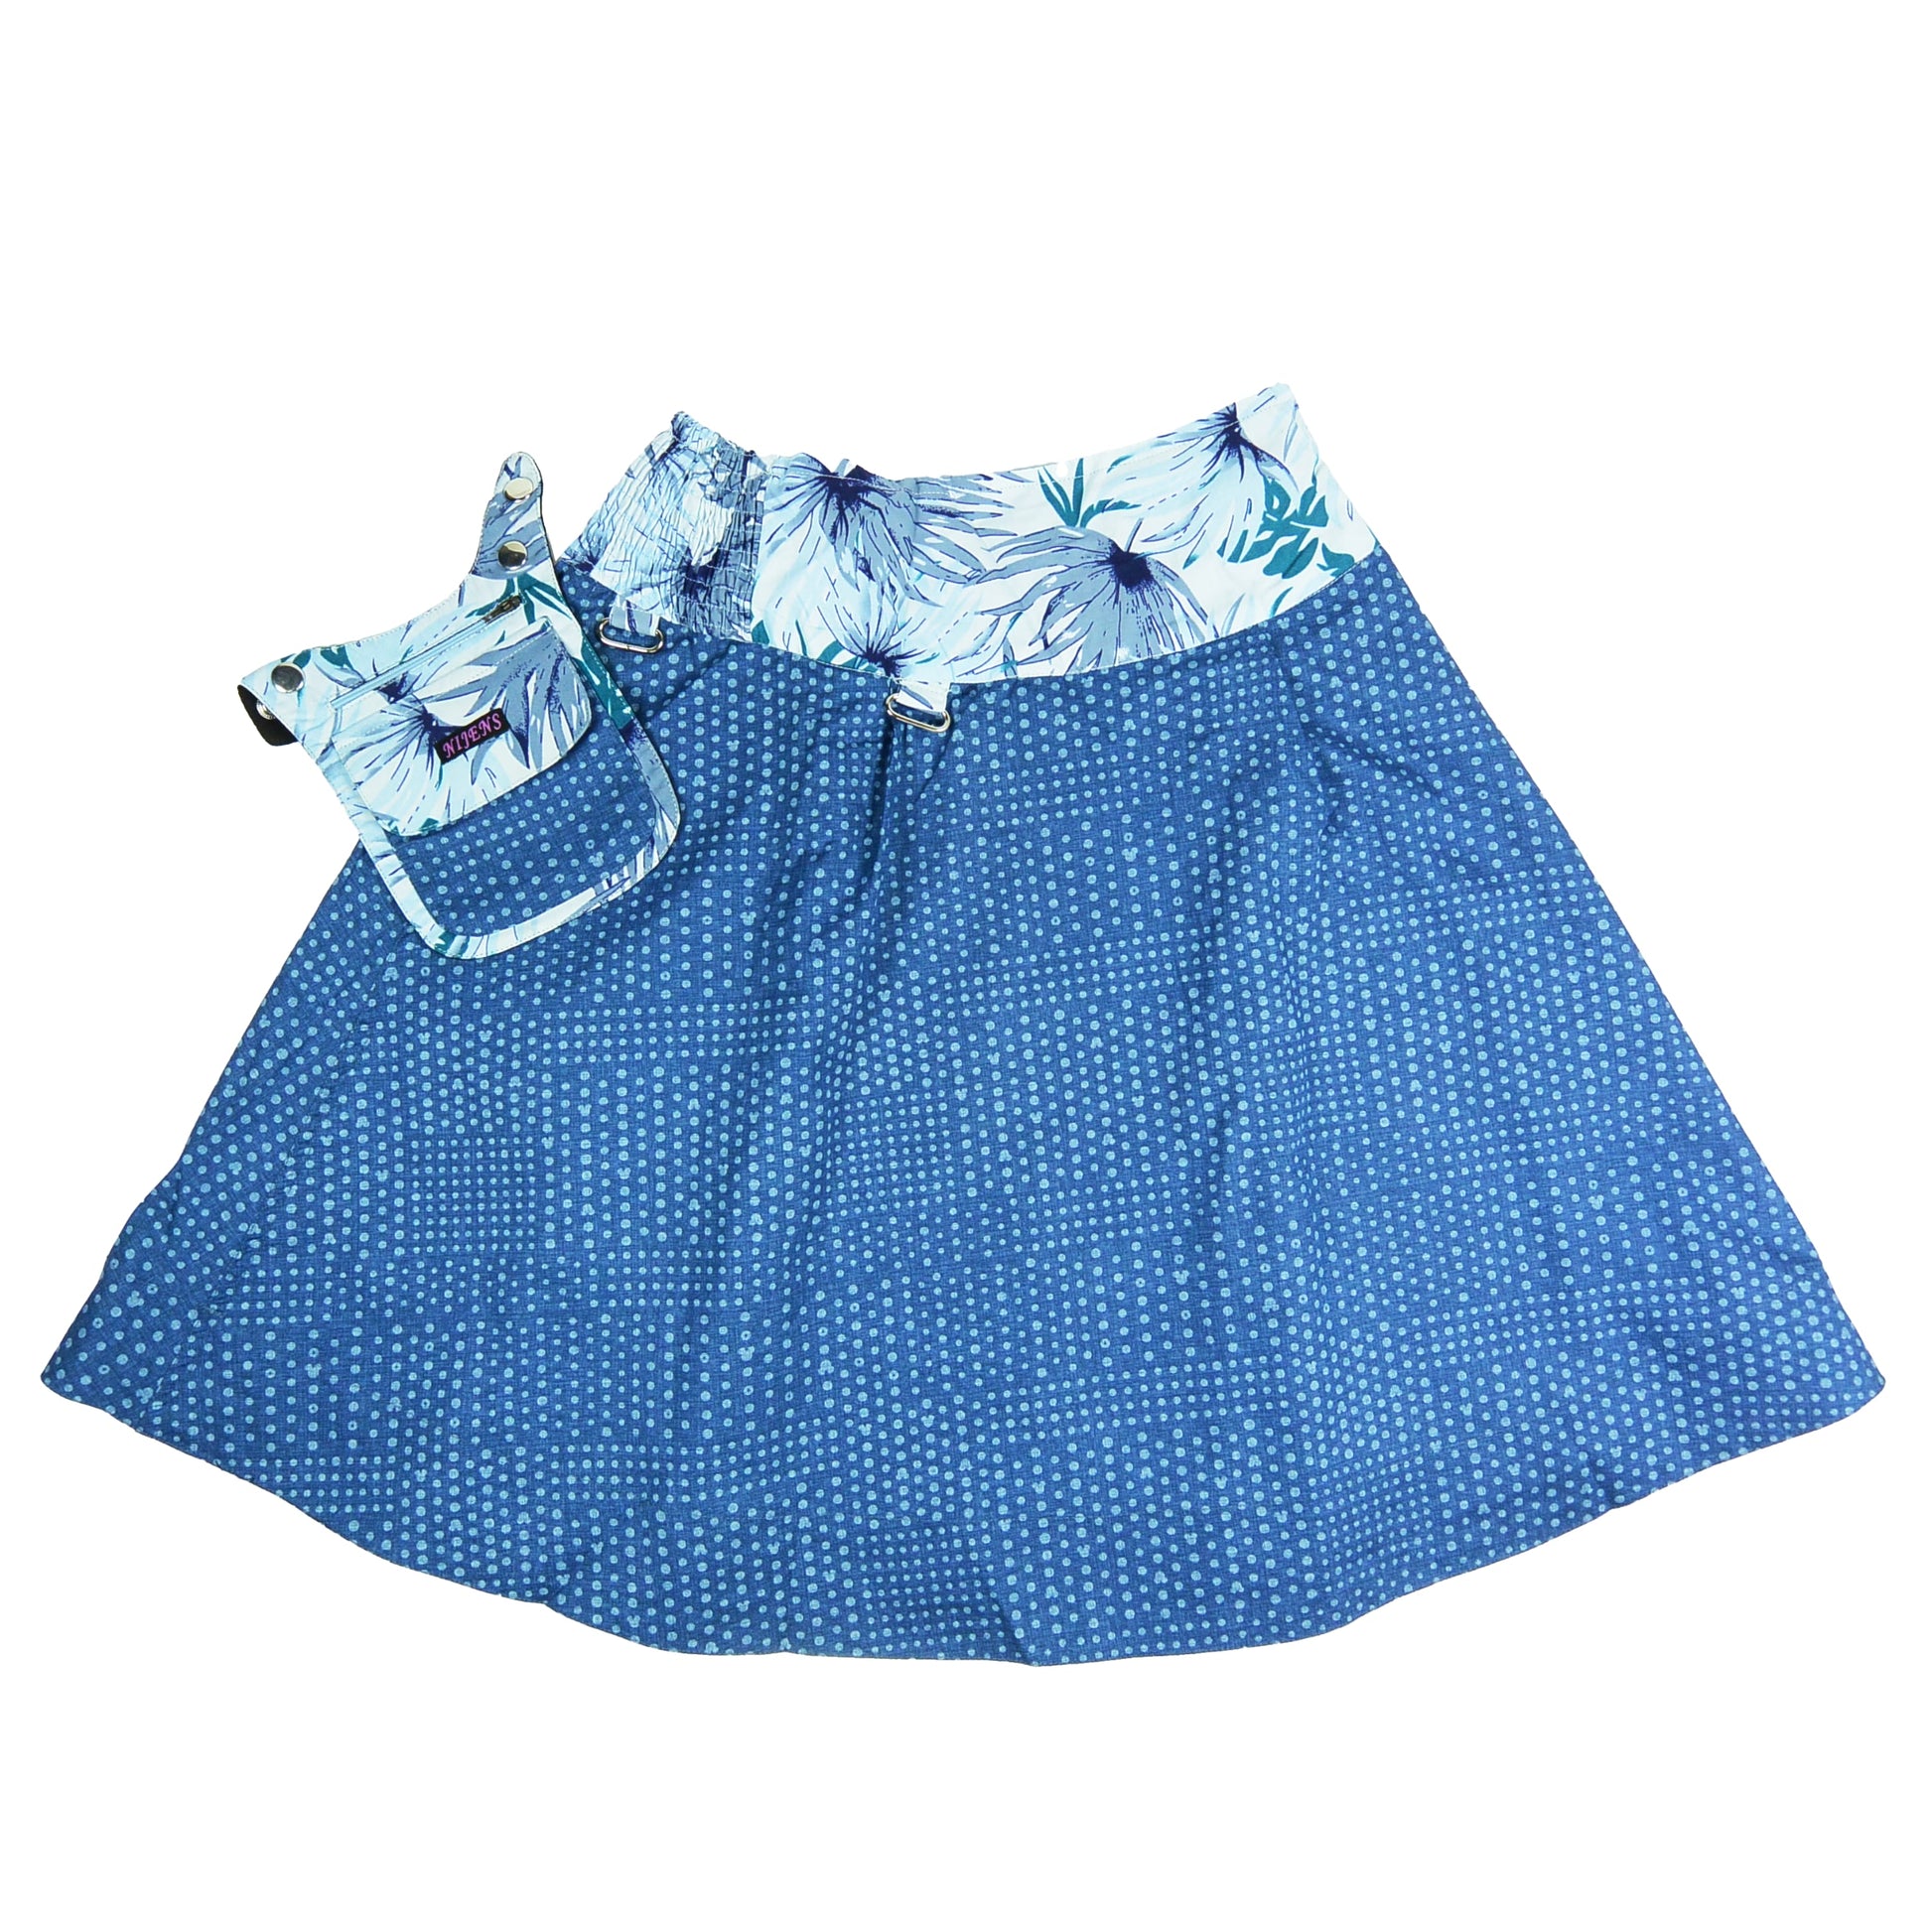 Nijens Damen One Size Wenderock mit Gummibund aus Bio-Baumwolle Blau 2